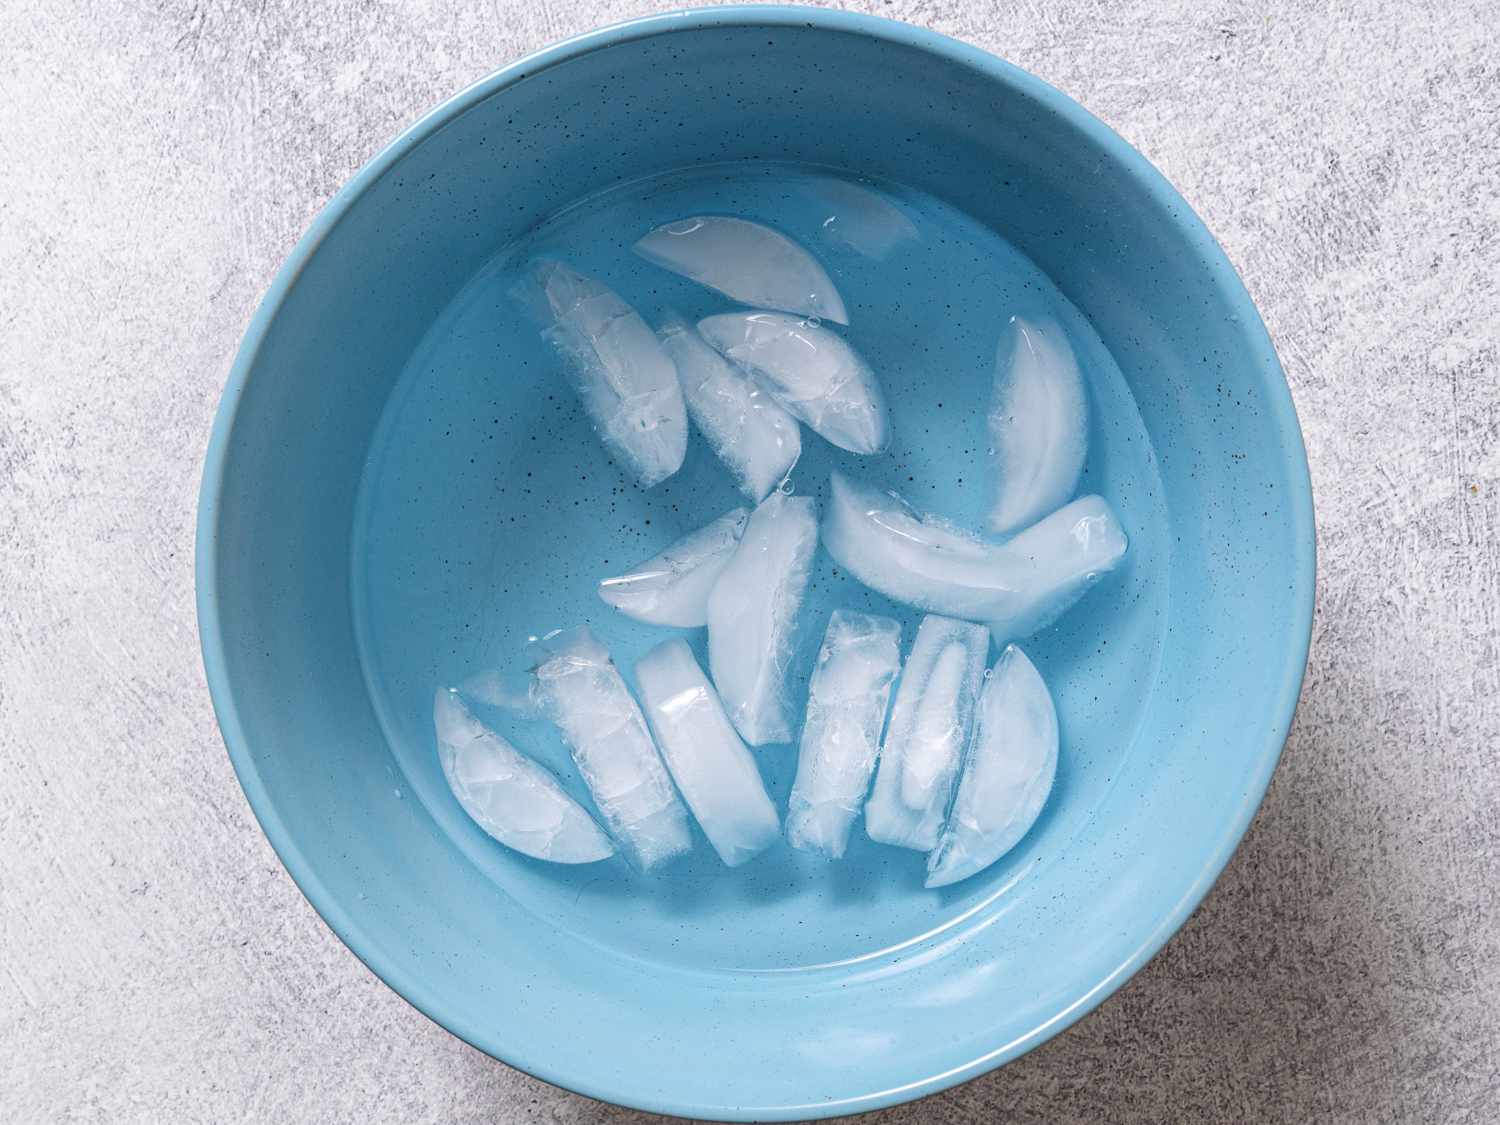 蓝色碗装满水和冰块,在水浴,将用于冷却热,煮熟的鸡蛋。